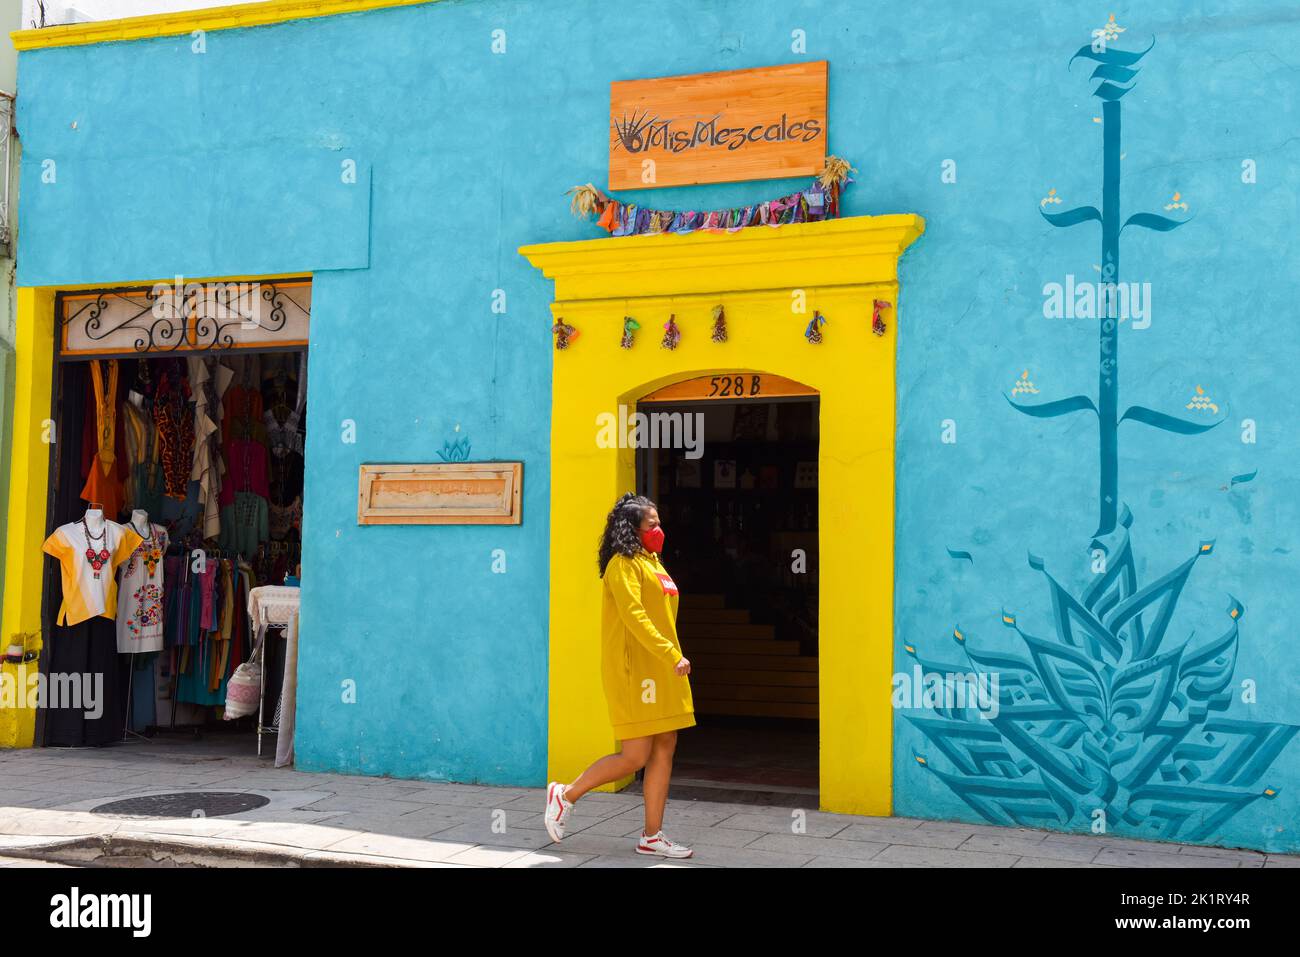 Shopping in the historical center of Oaxaca de Juarez, Mexico Stock Photo